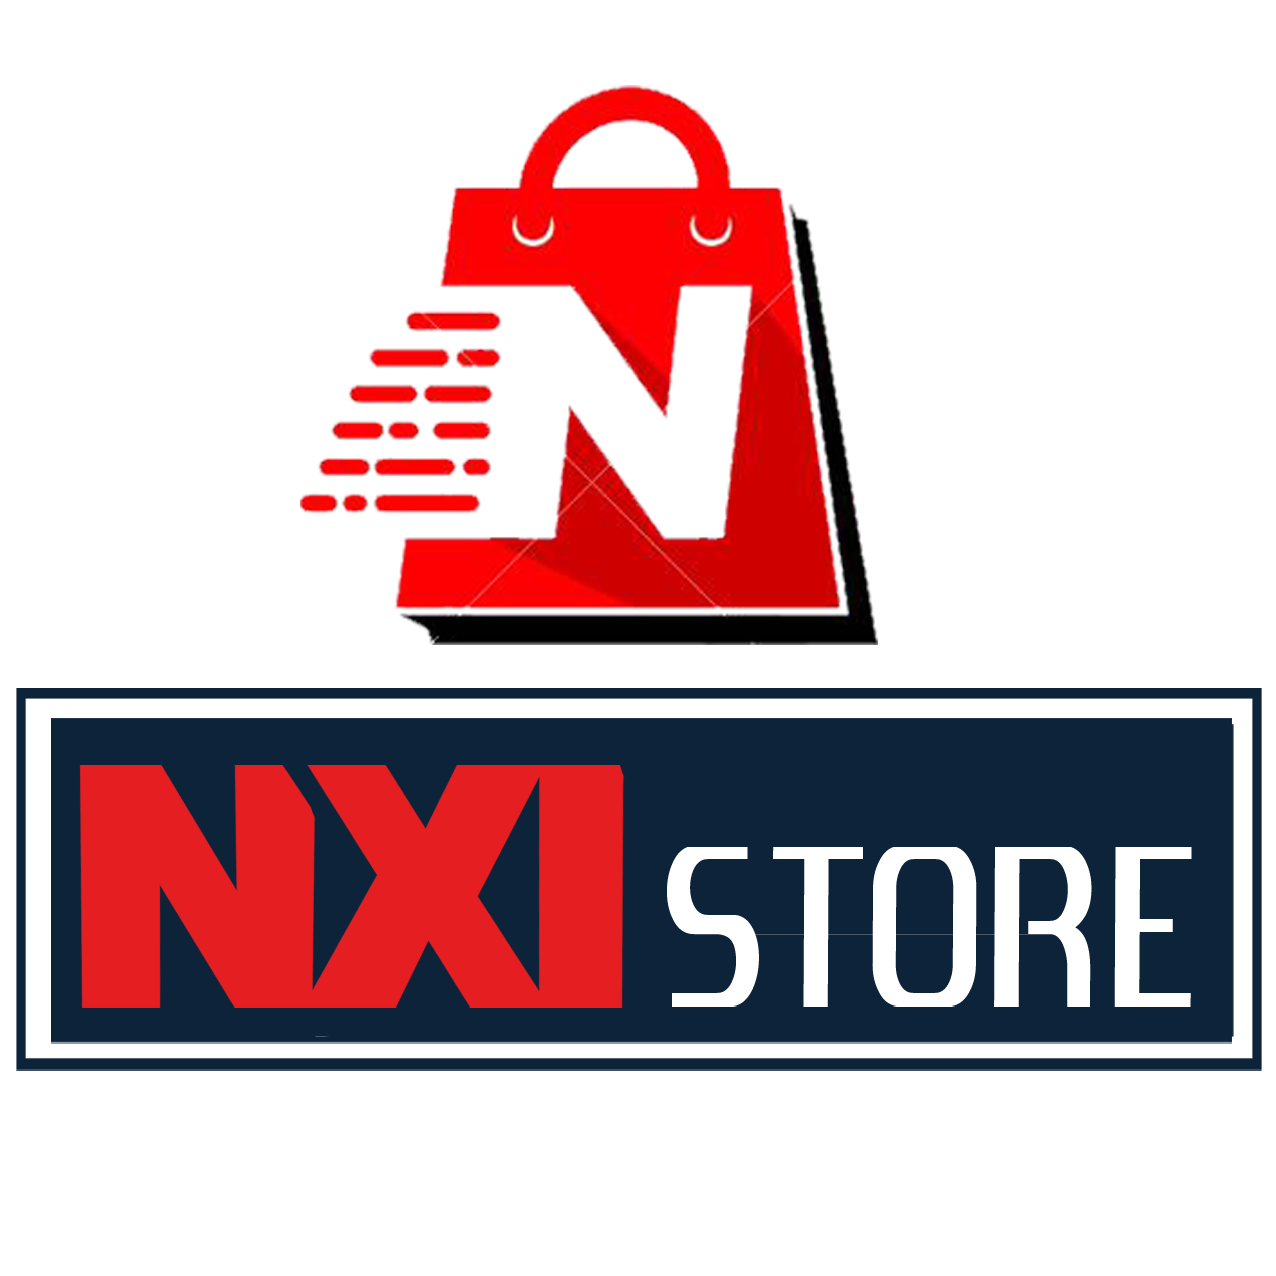 NXI Store